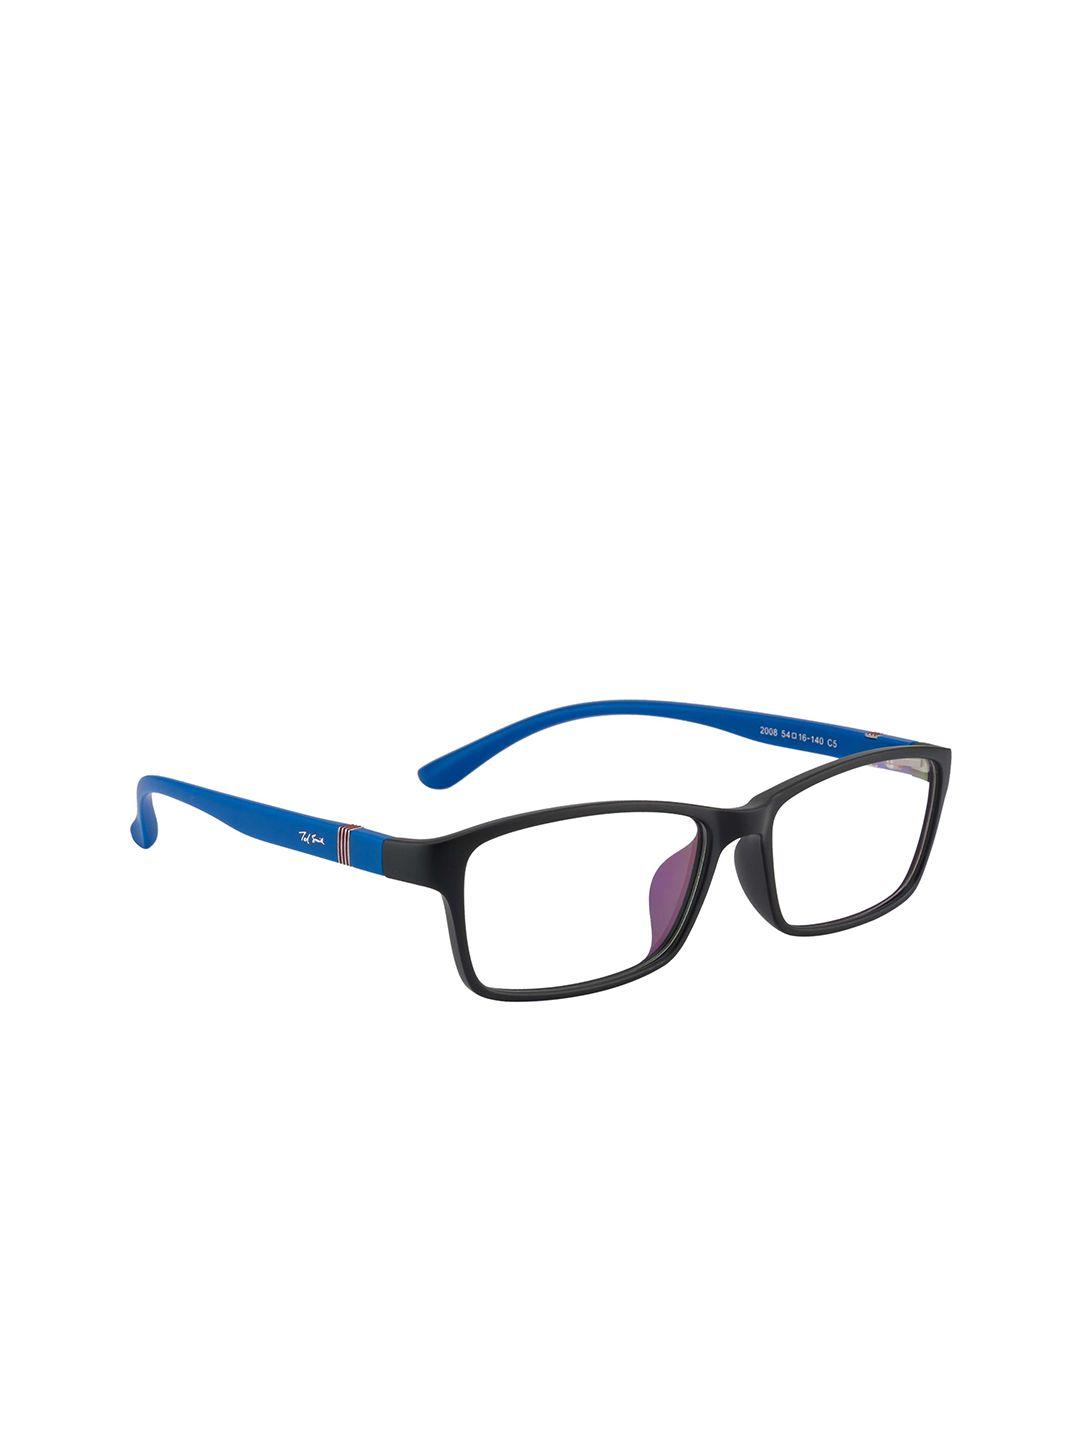 ted smith unisex black & blue full rim rectangle frames eyeglasses